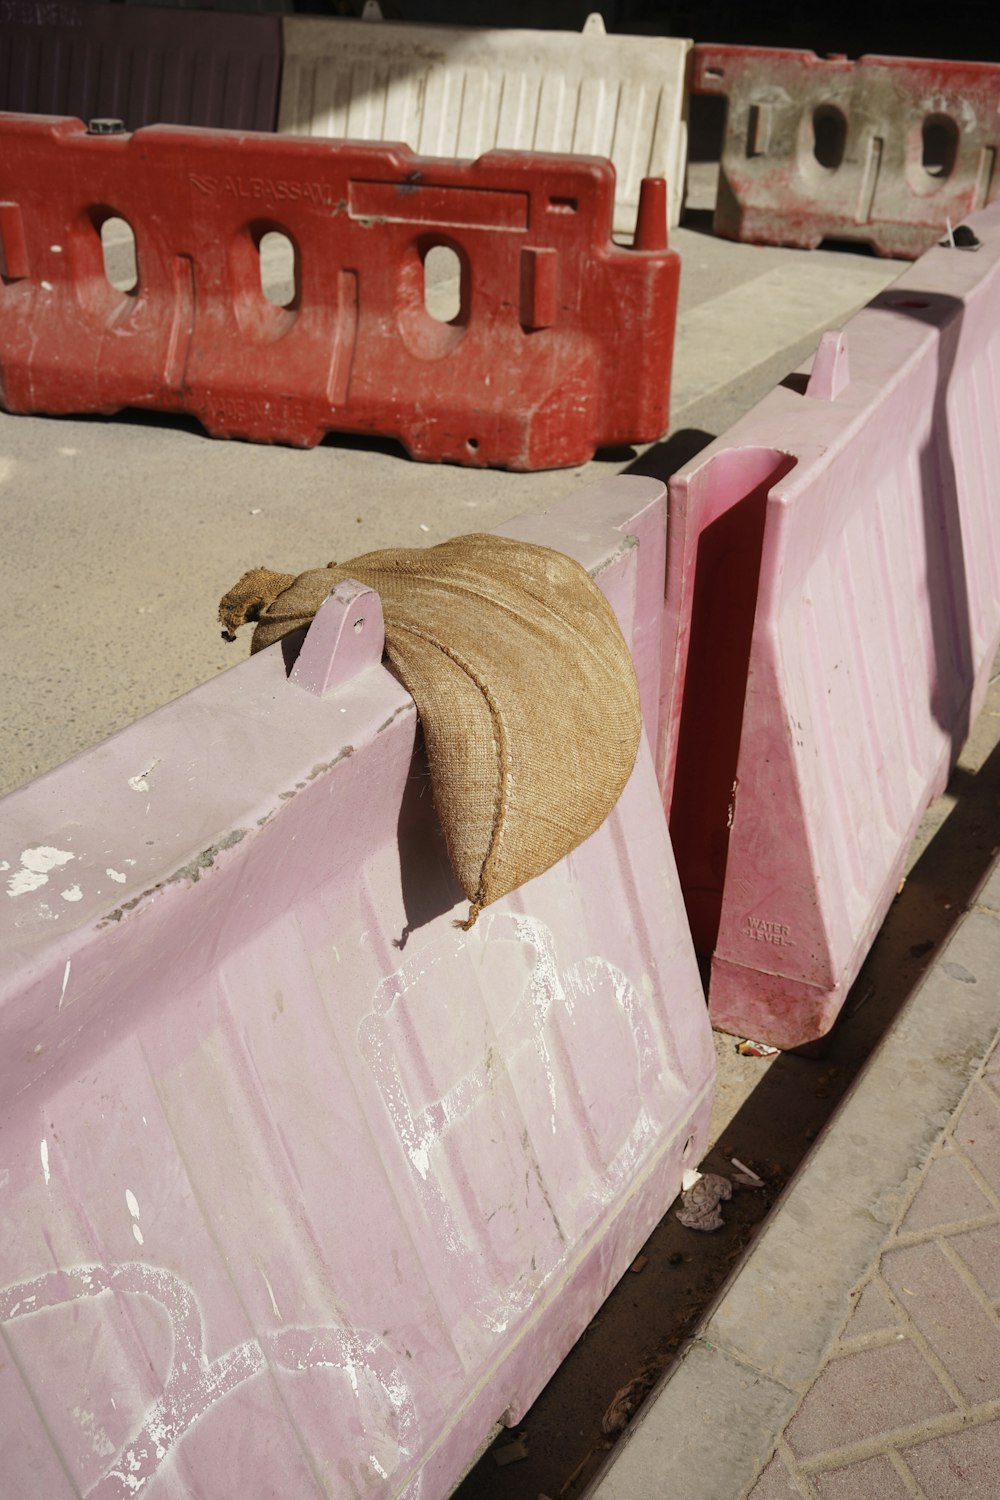 chapéu de palha marrom na mesa de madeira branca e rosa